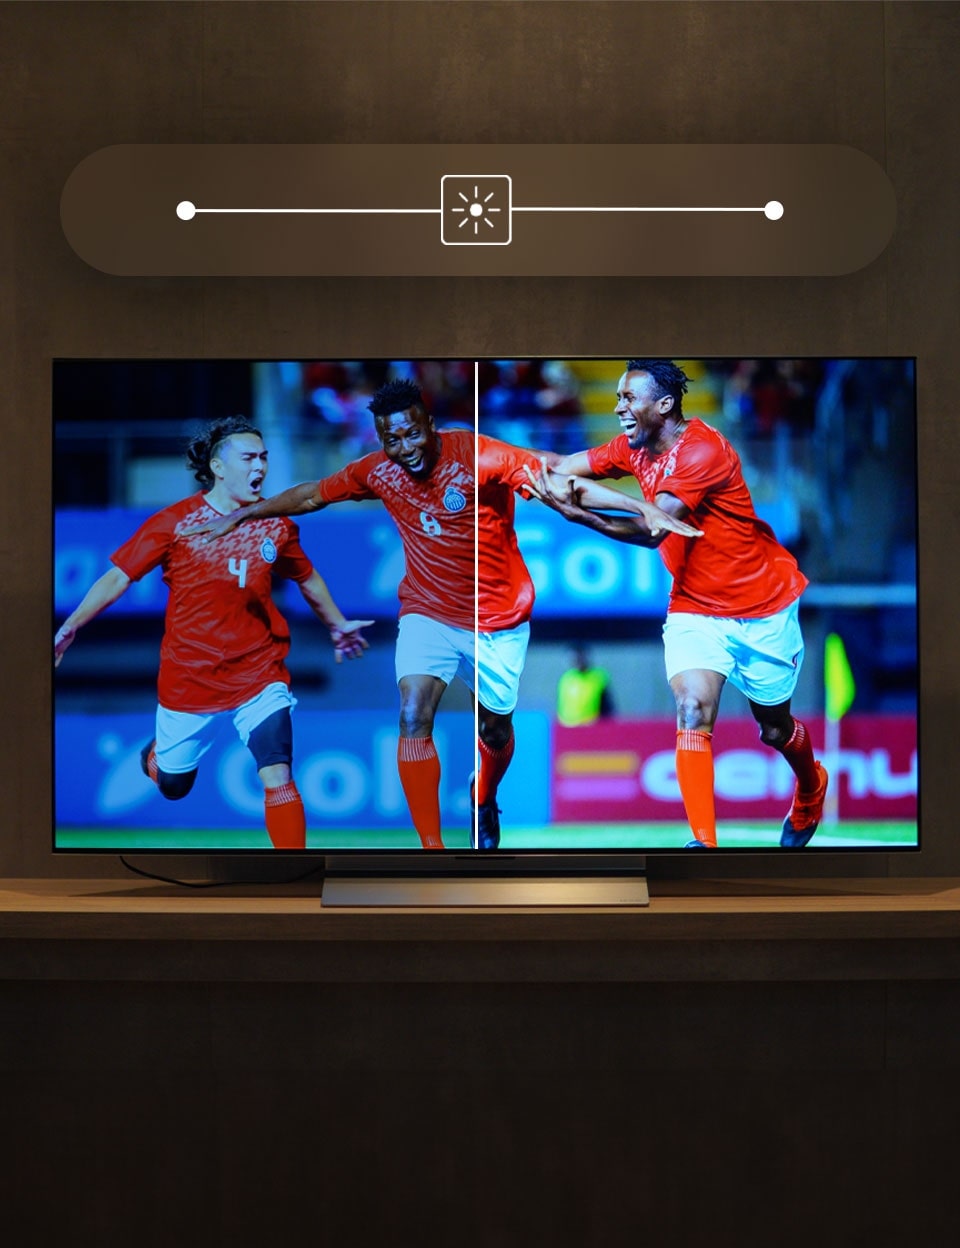 Televizoriaus ekrano nustatymų reguliavimas televizoriaus kalibravimui (ryškumas, spalvos ir kontrastas, ryškumas, atspalvis ir atspalvis)